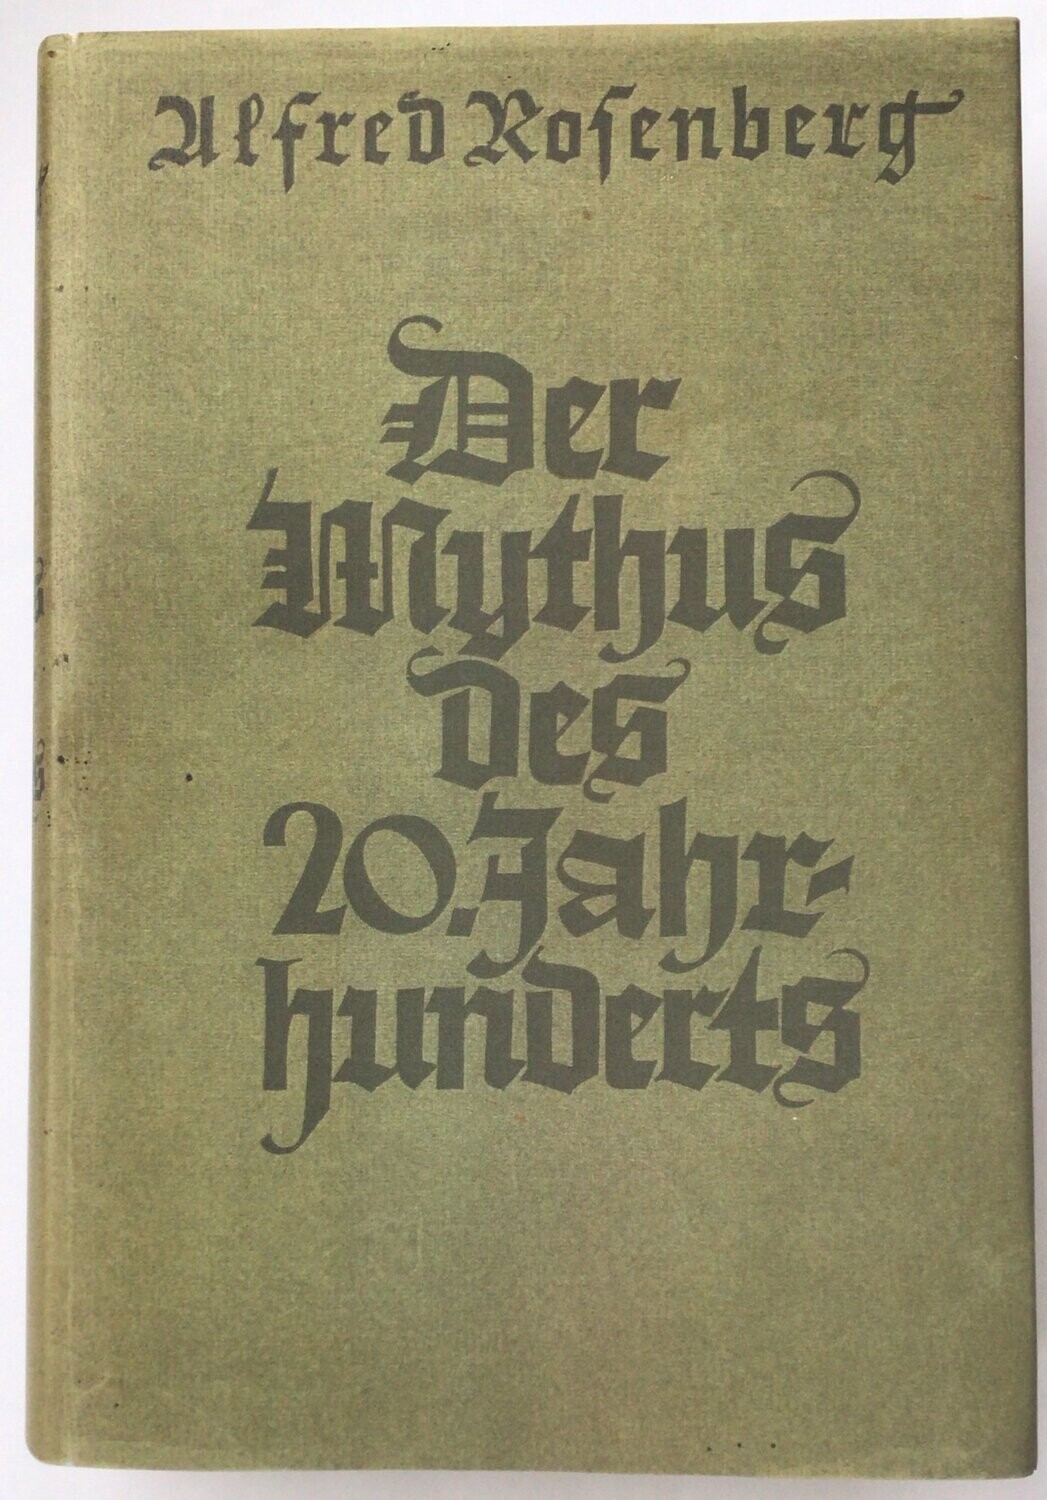 Der Mythus des 20. Jahrhunderts - Geschenkausgabe in Ganzleinen (2. Auflage) aus dem Jahr 1940 mit Schutzumschlag (Kopie)